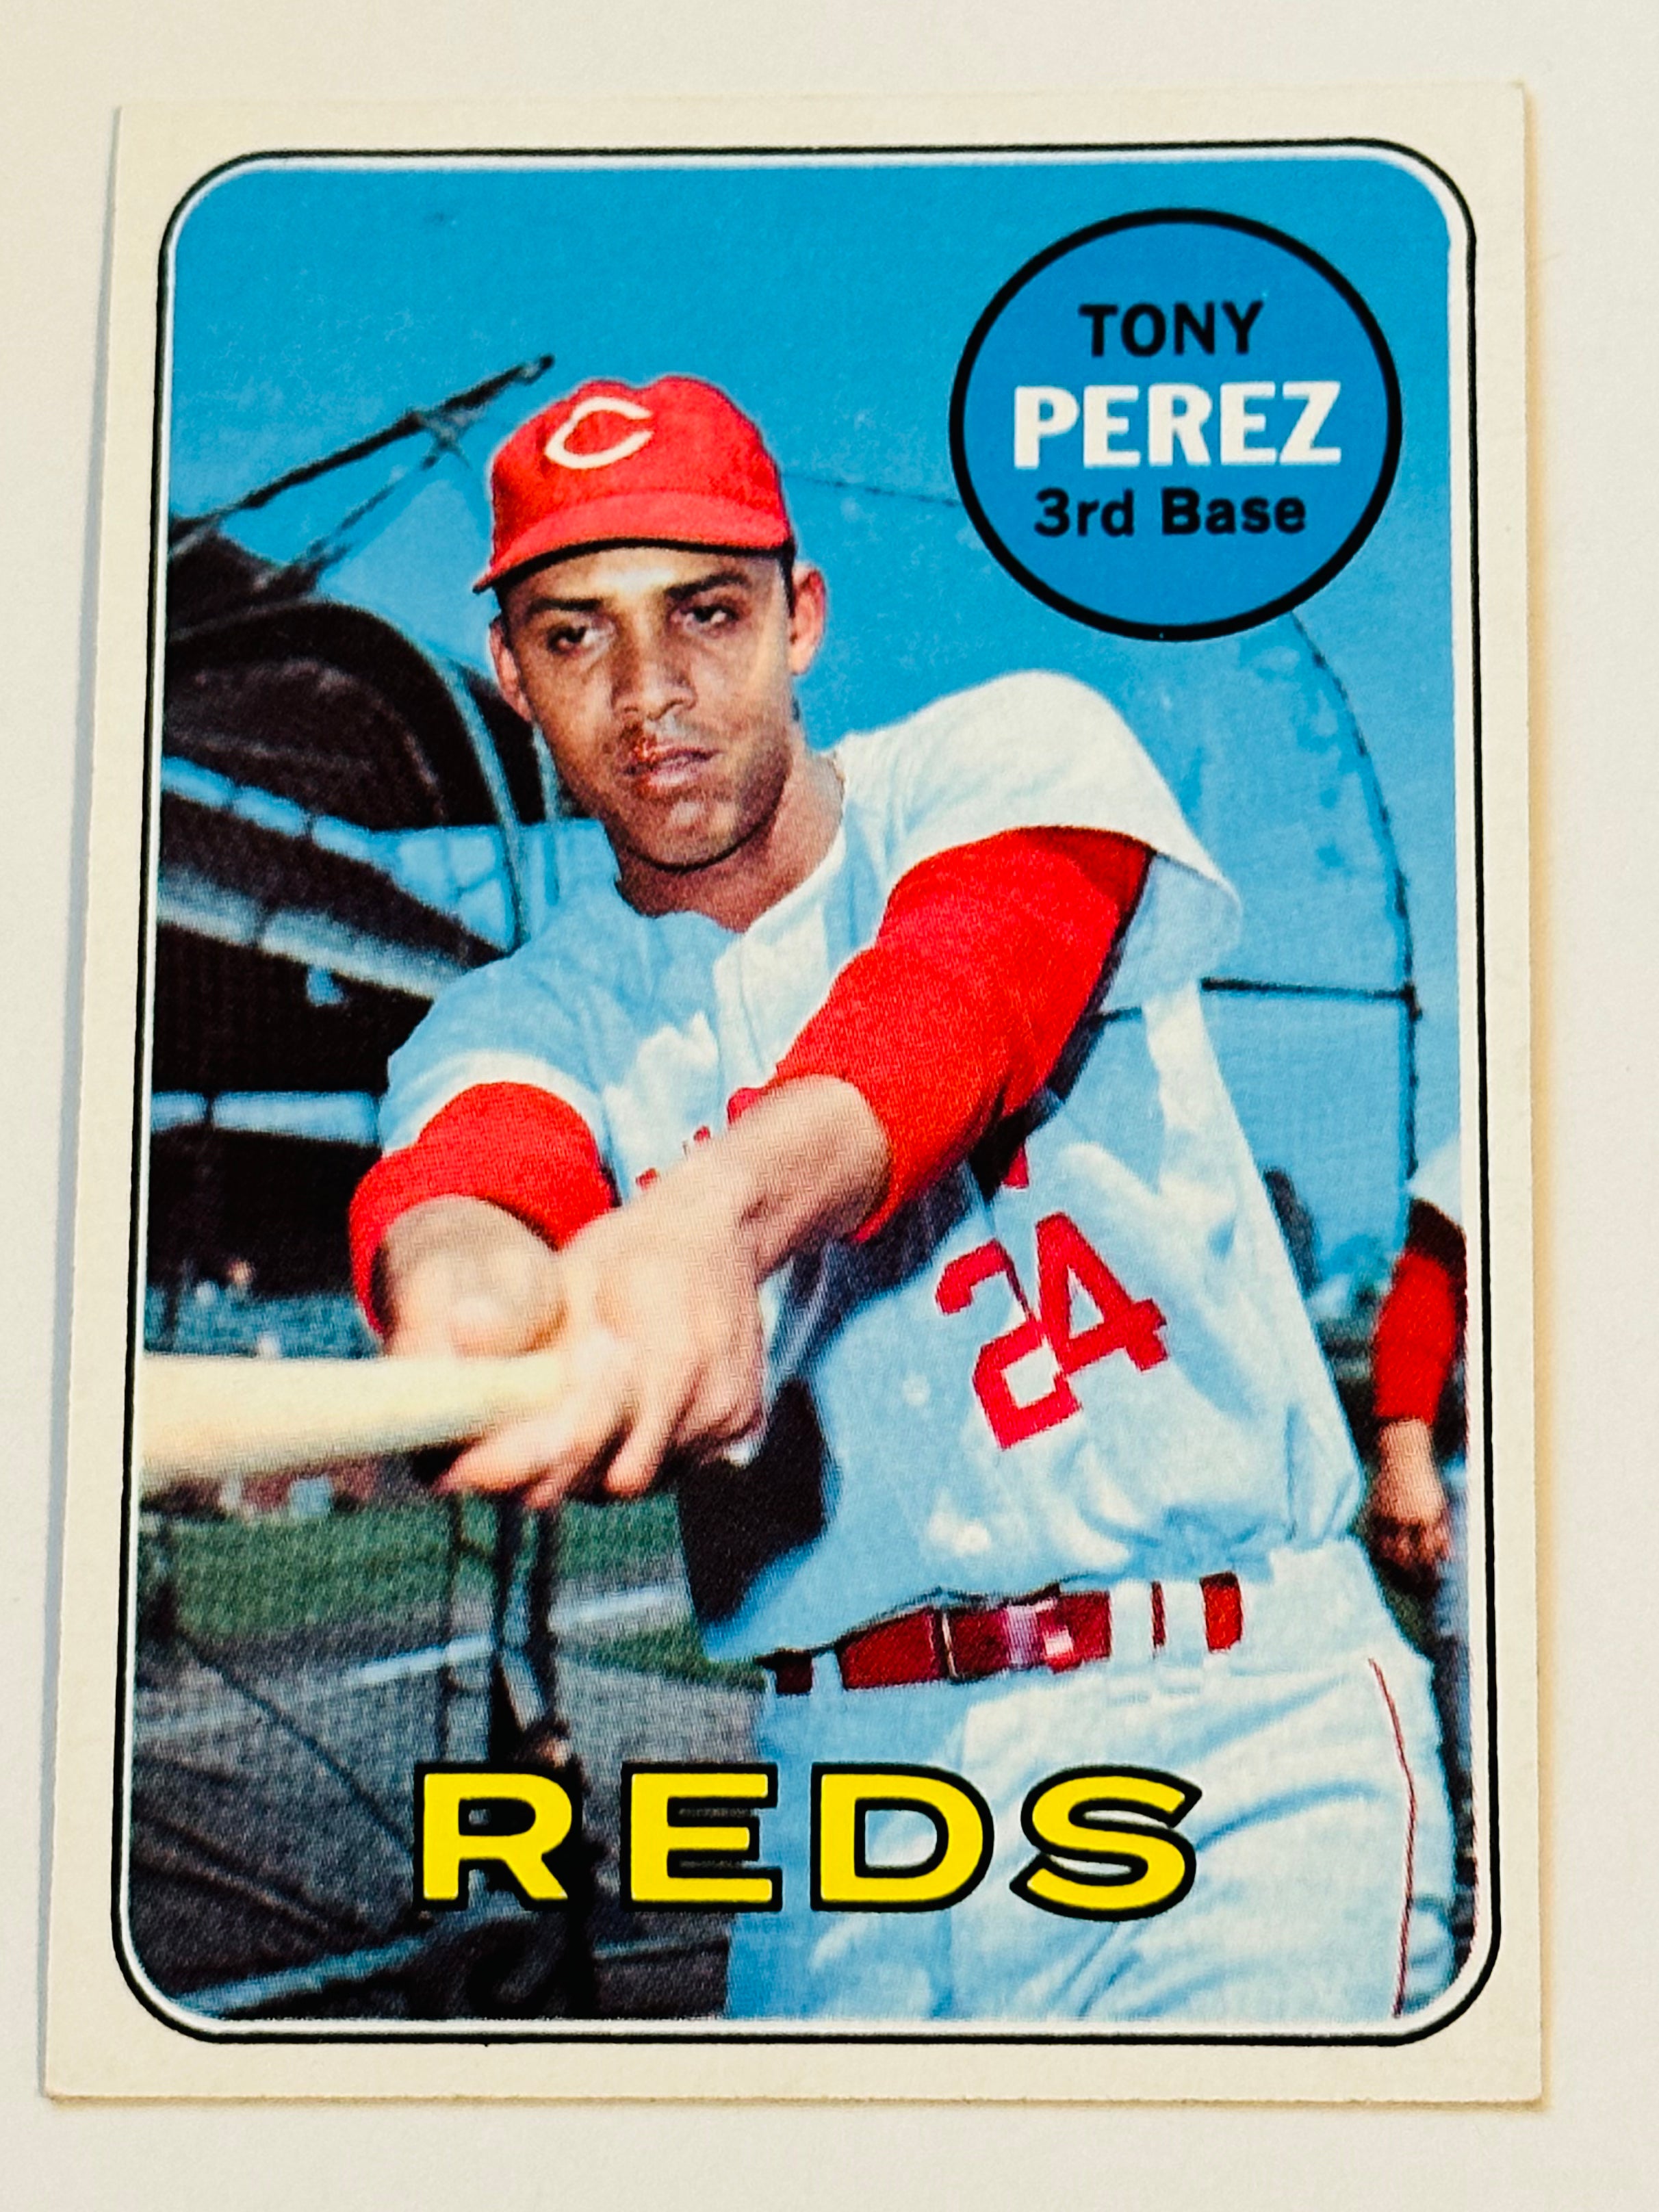 1969 Tony Perez high grade NM baseball card